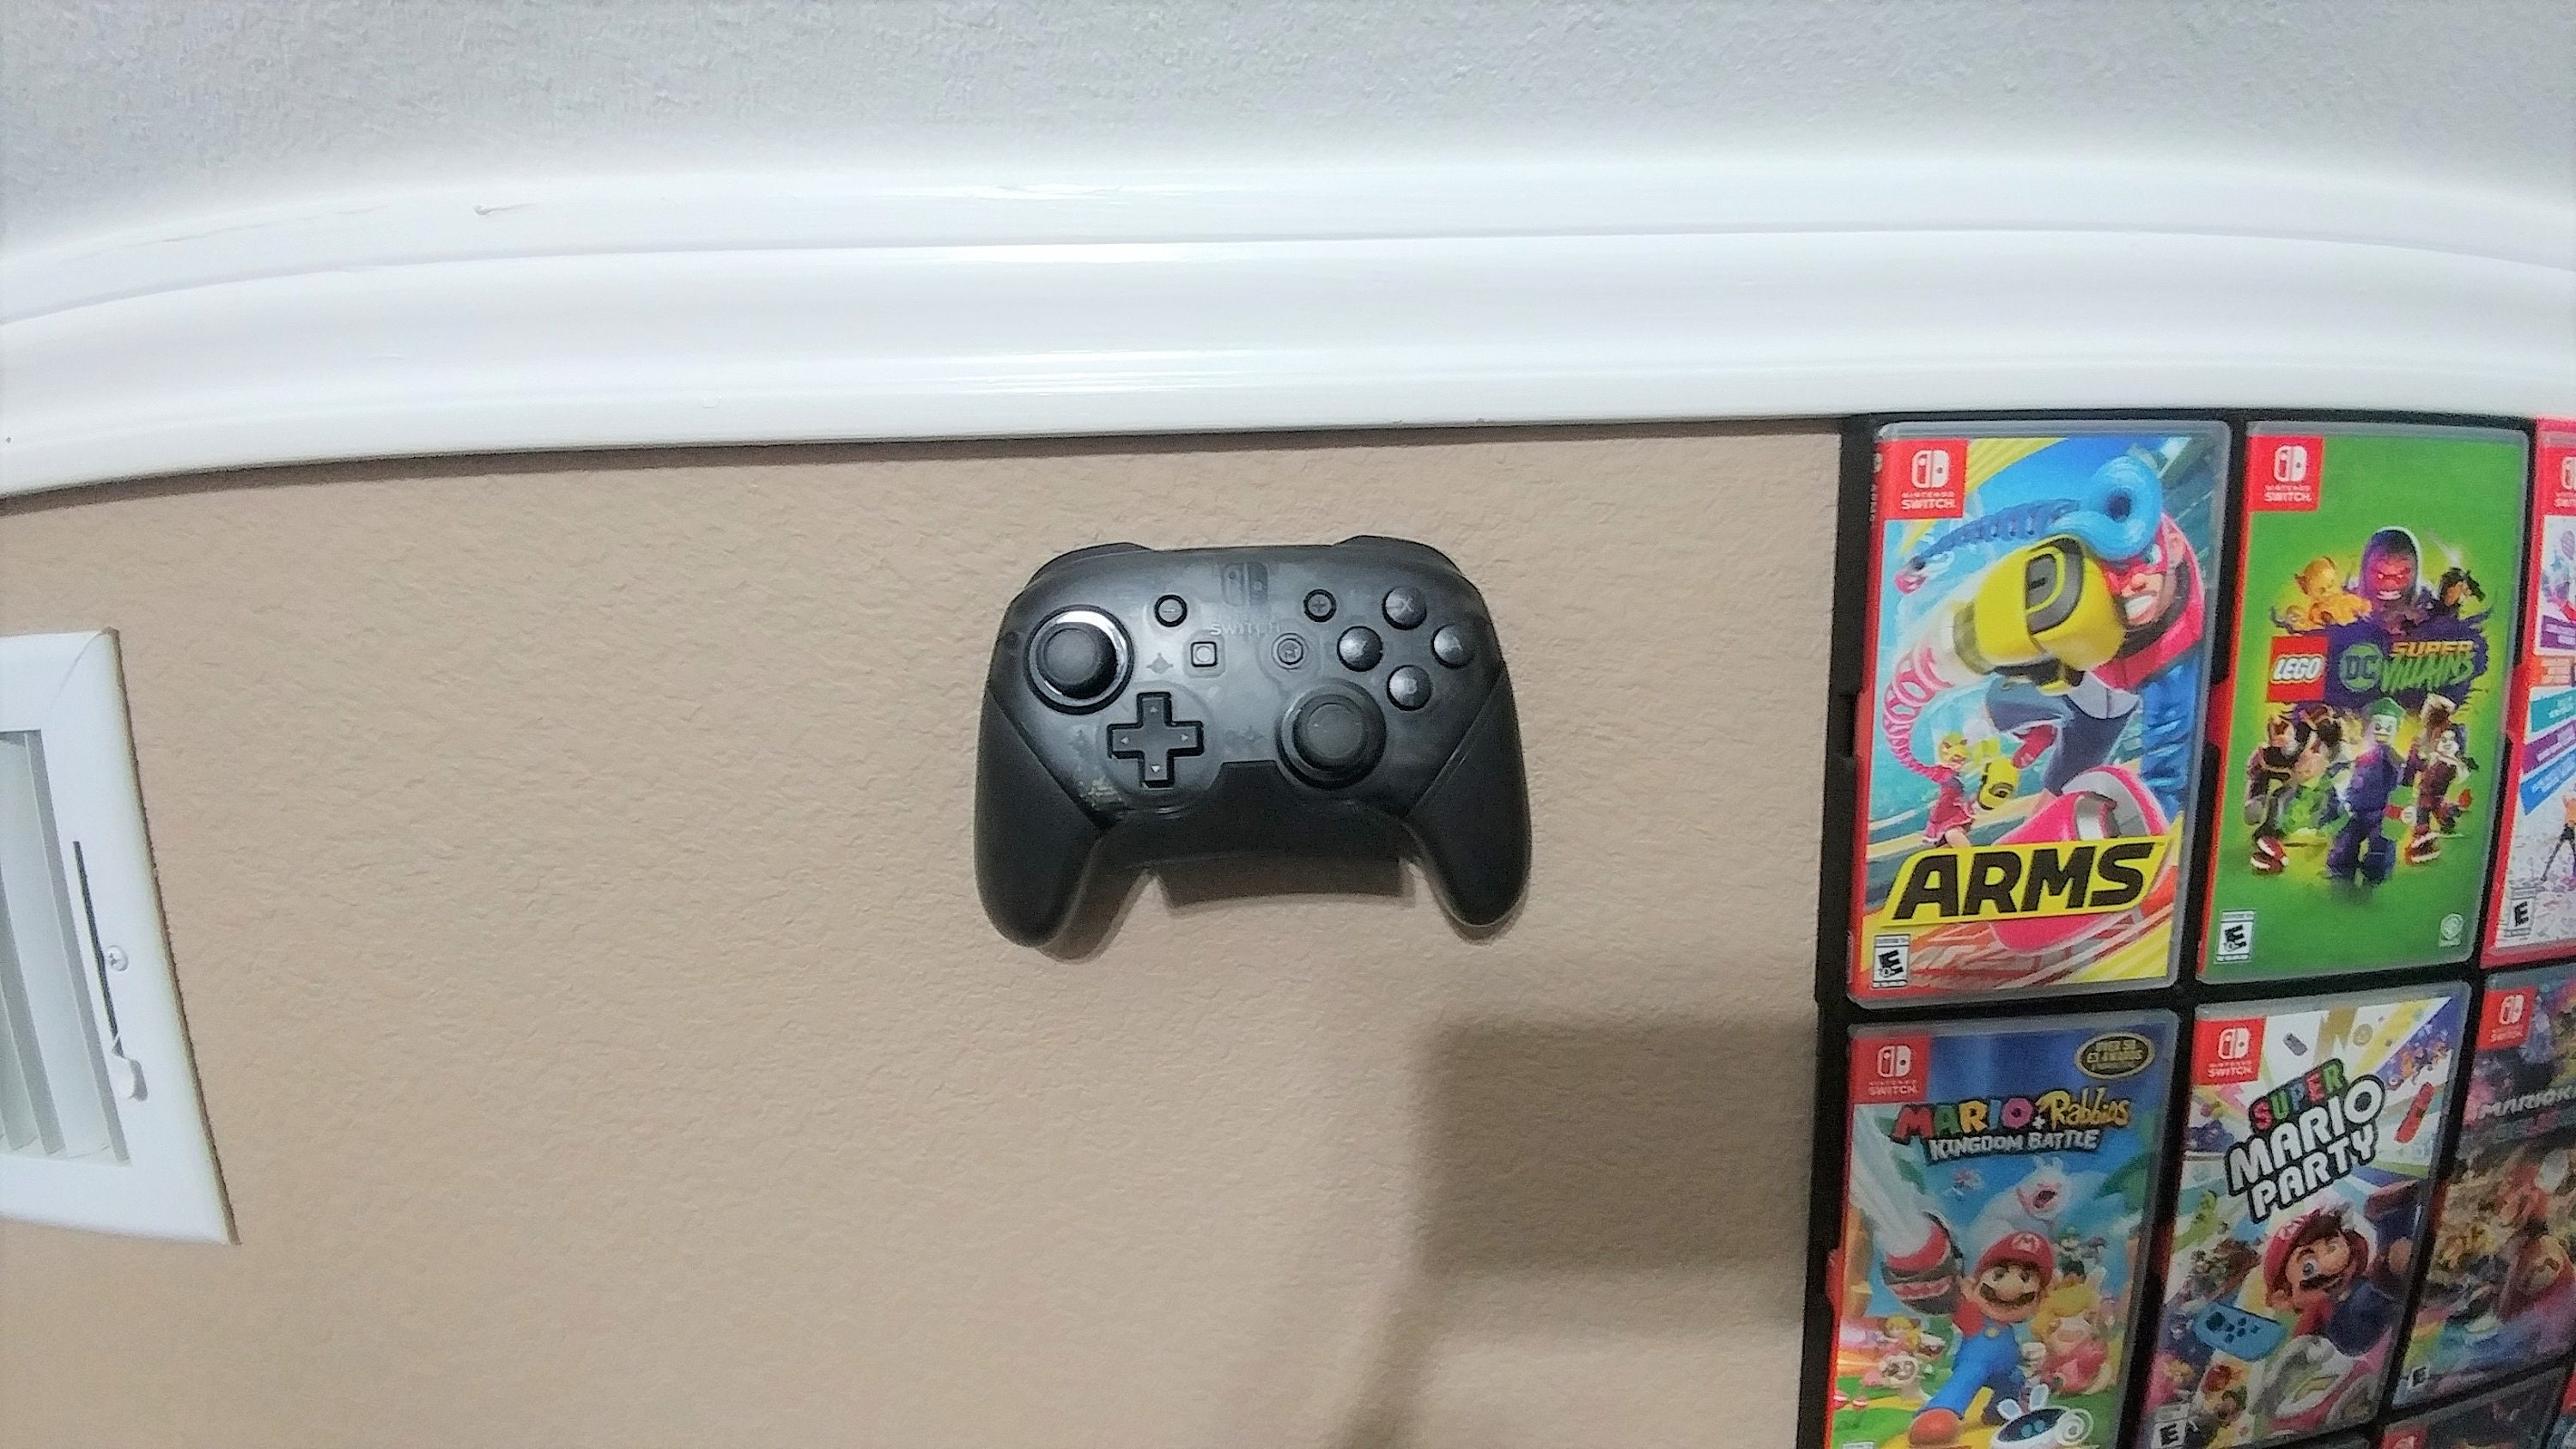 Soporte y soporte de pared para el mando profesional de Nintendo Switch